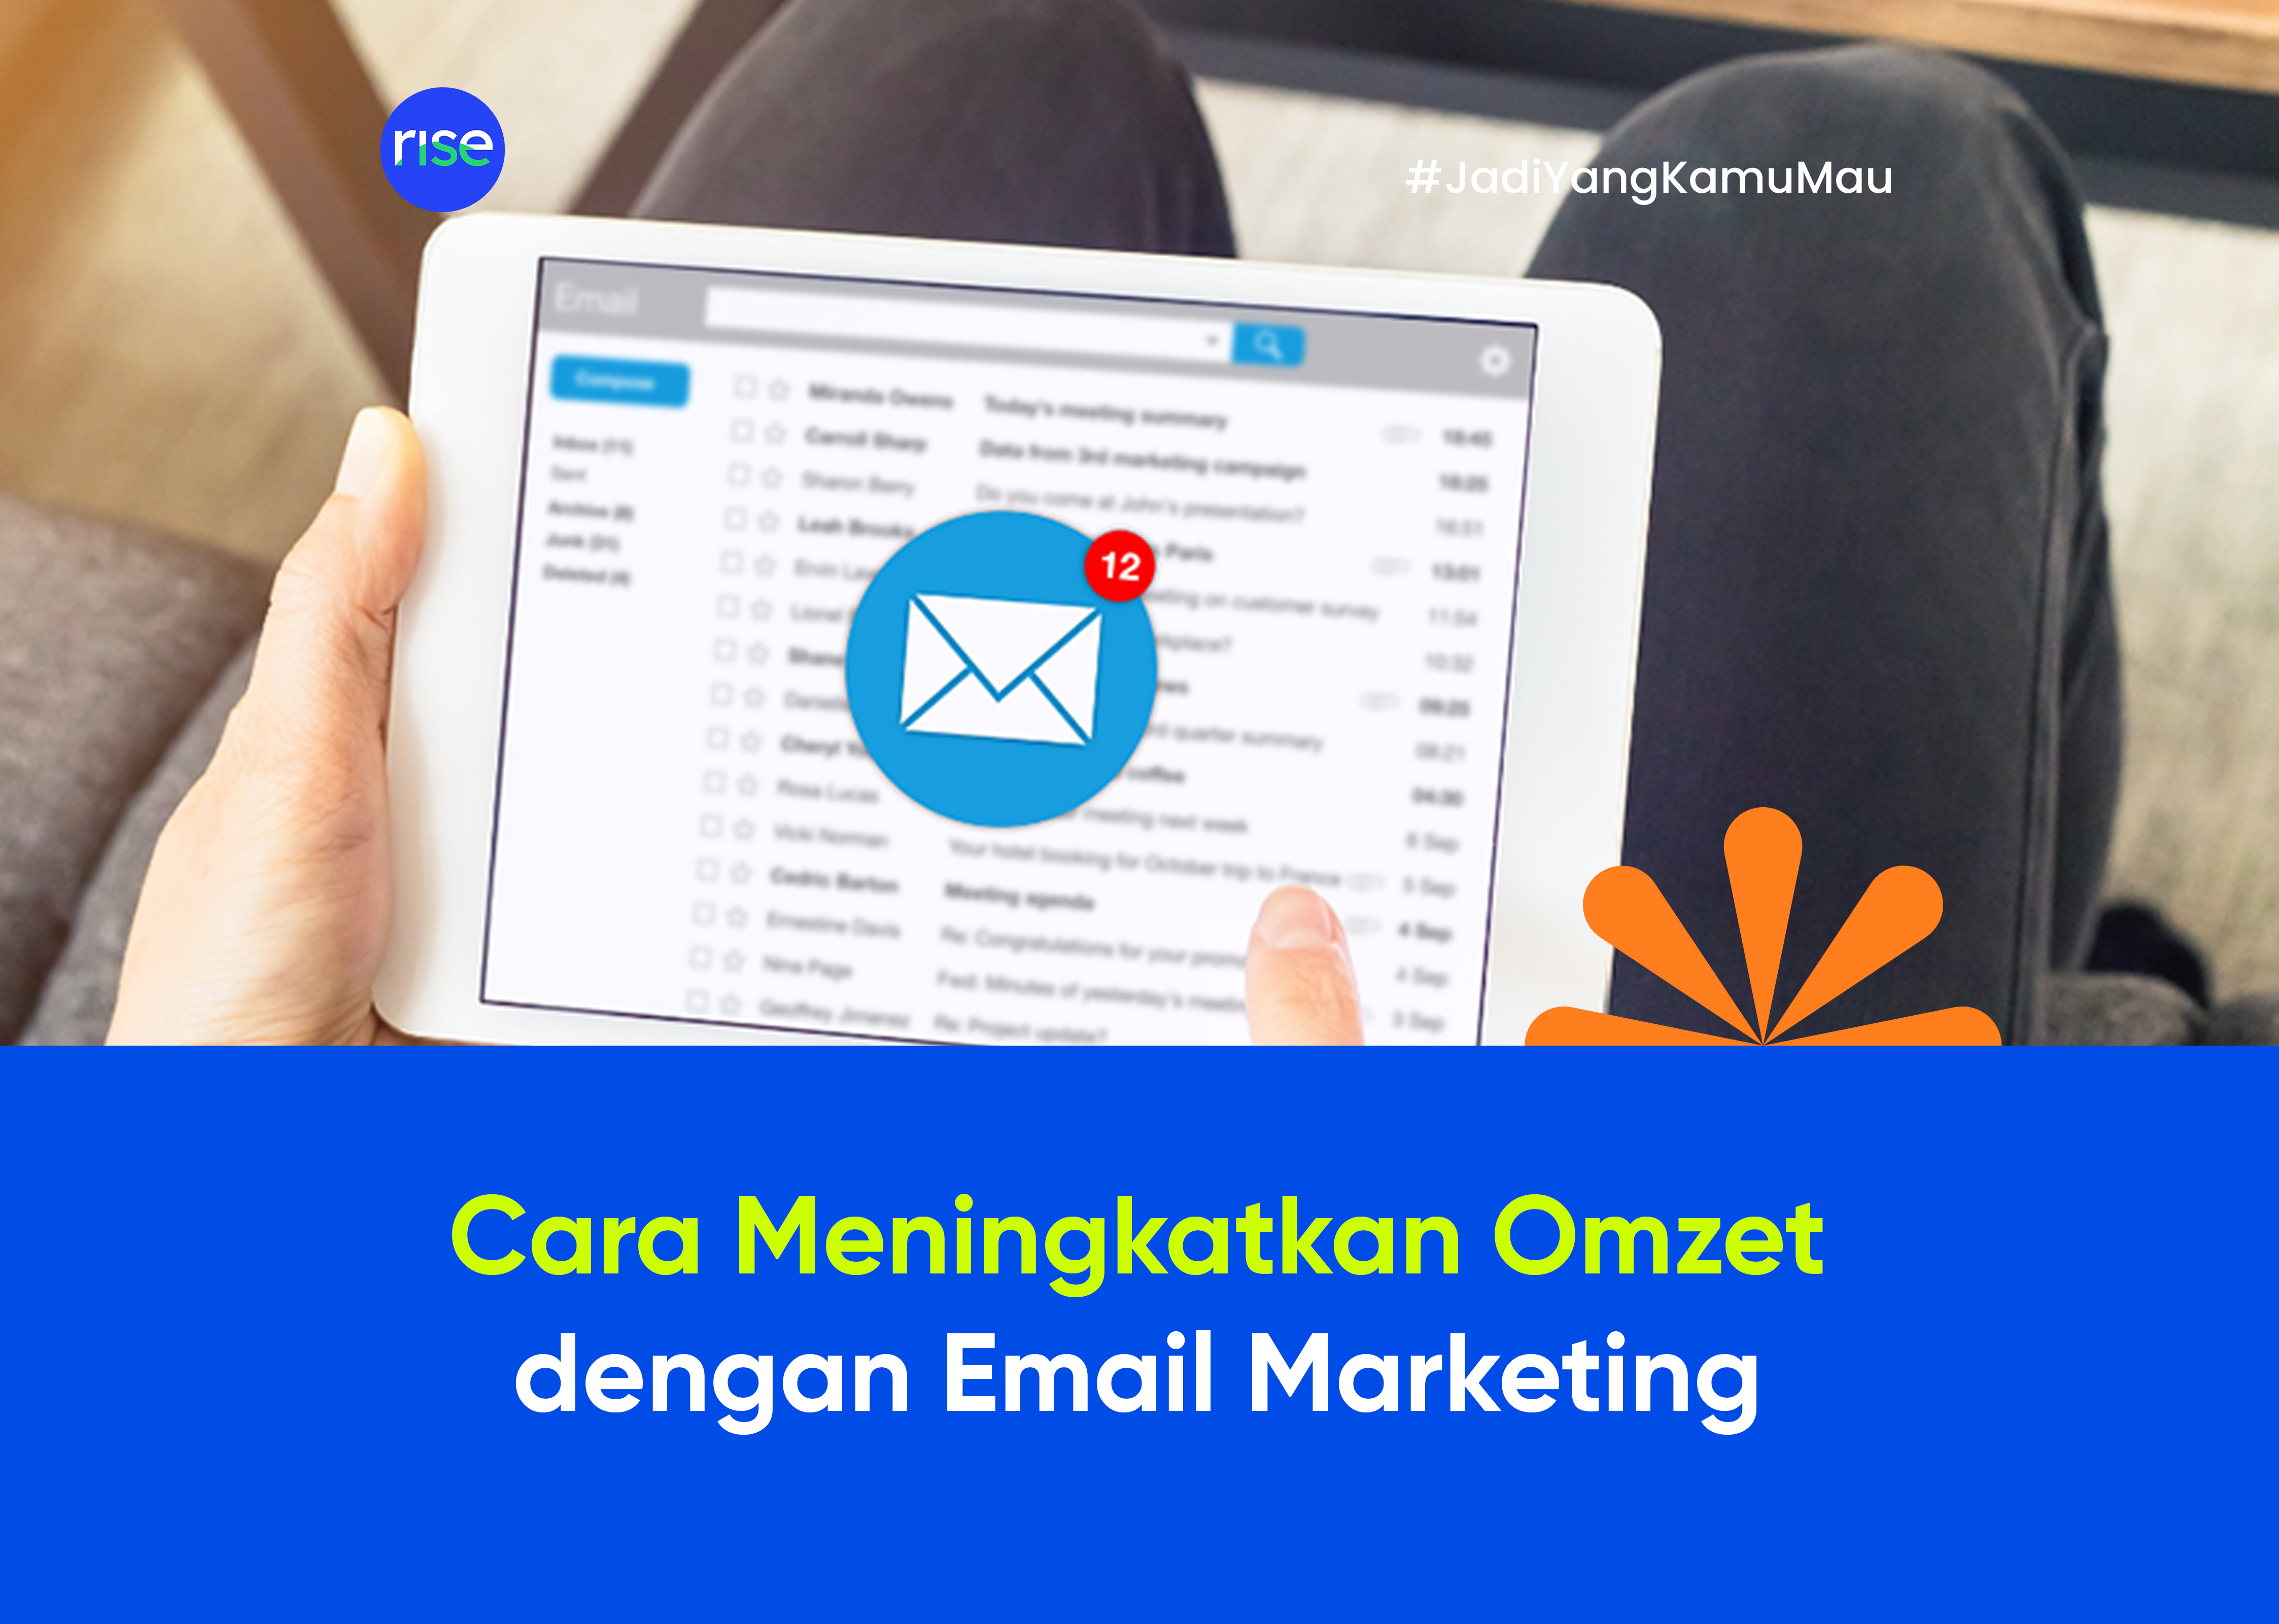 Cara Meningkatkan Omzet dengan Email Marketing